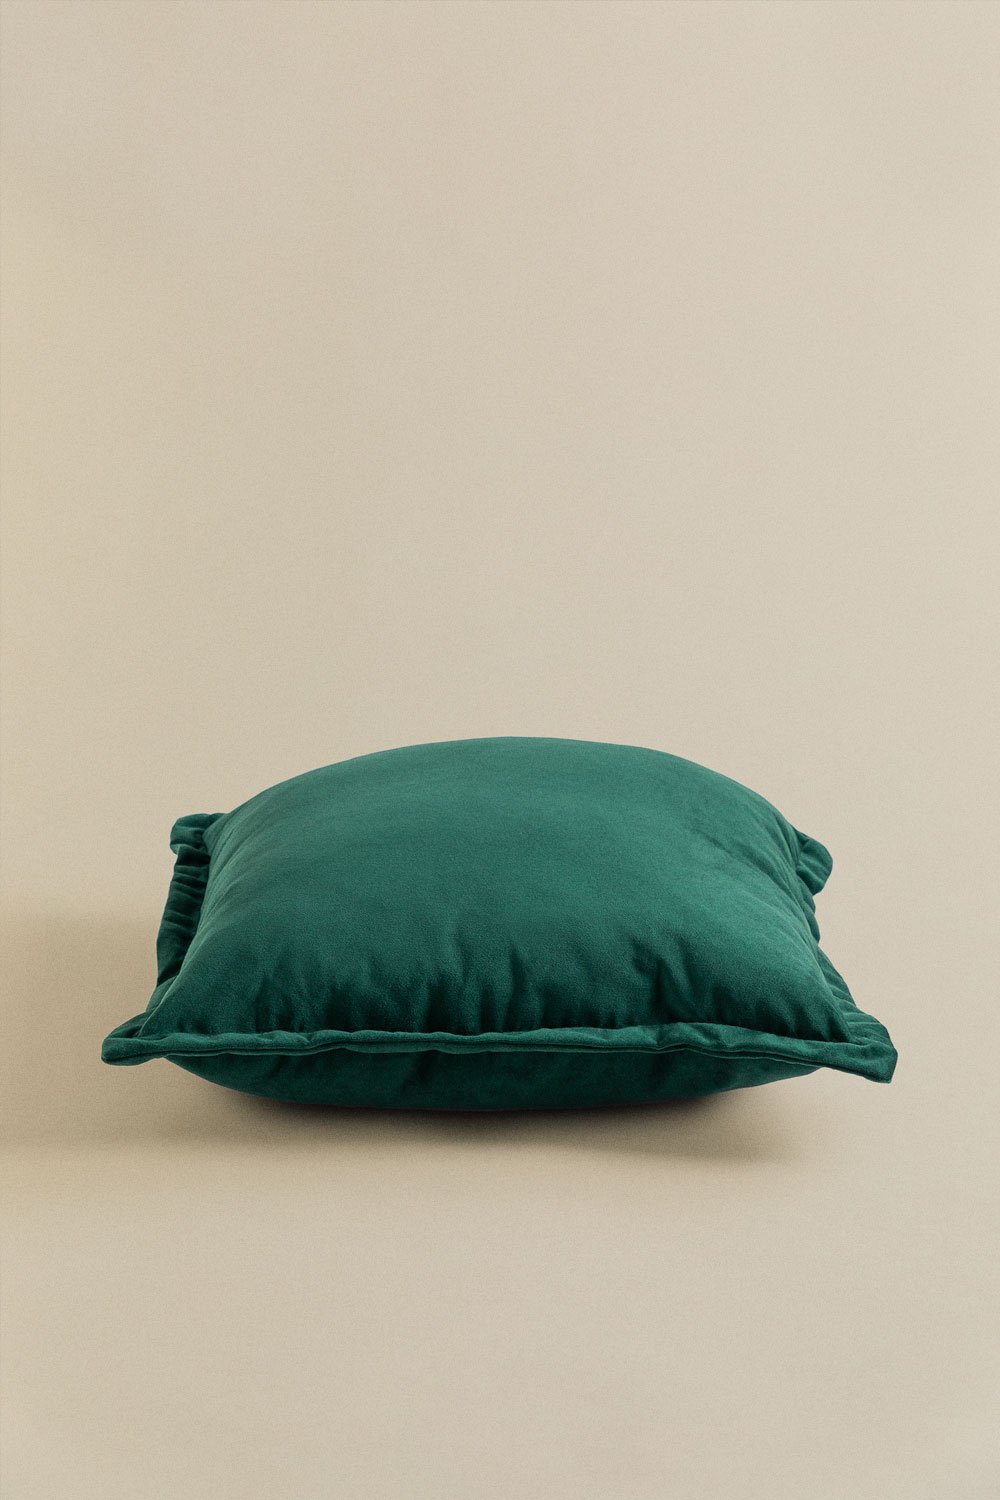 Cuscino quadrato in velluto (53x53 cm) Kata, immagine della galleria 2